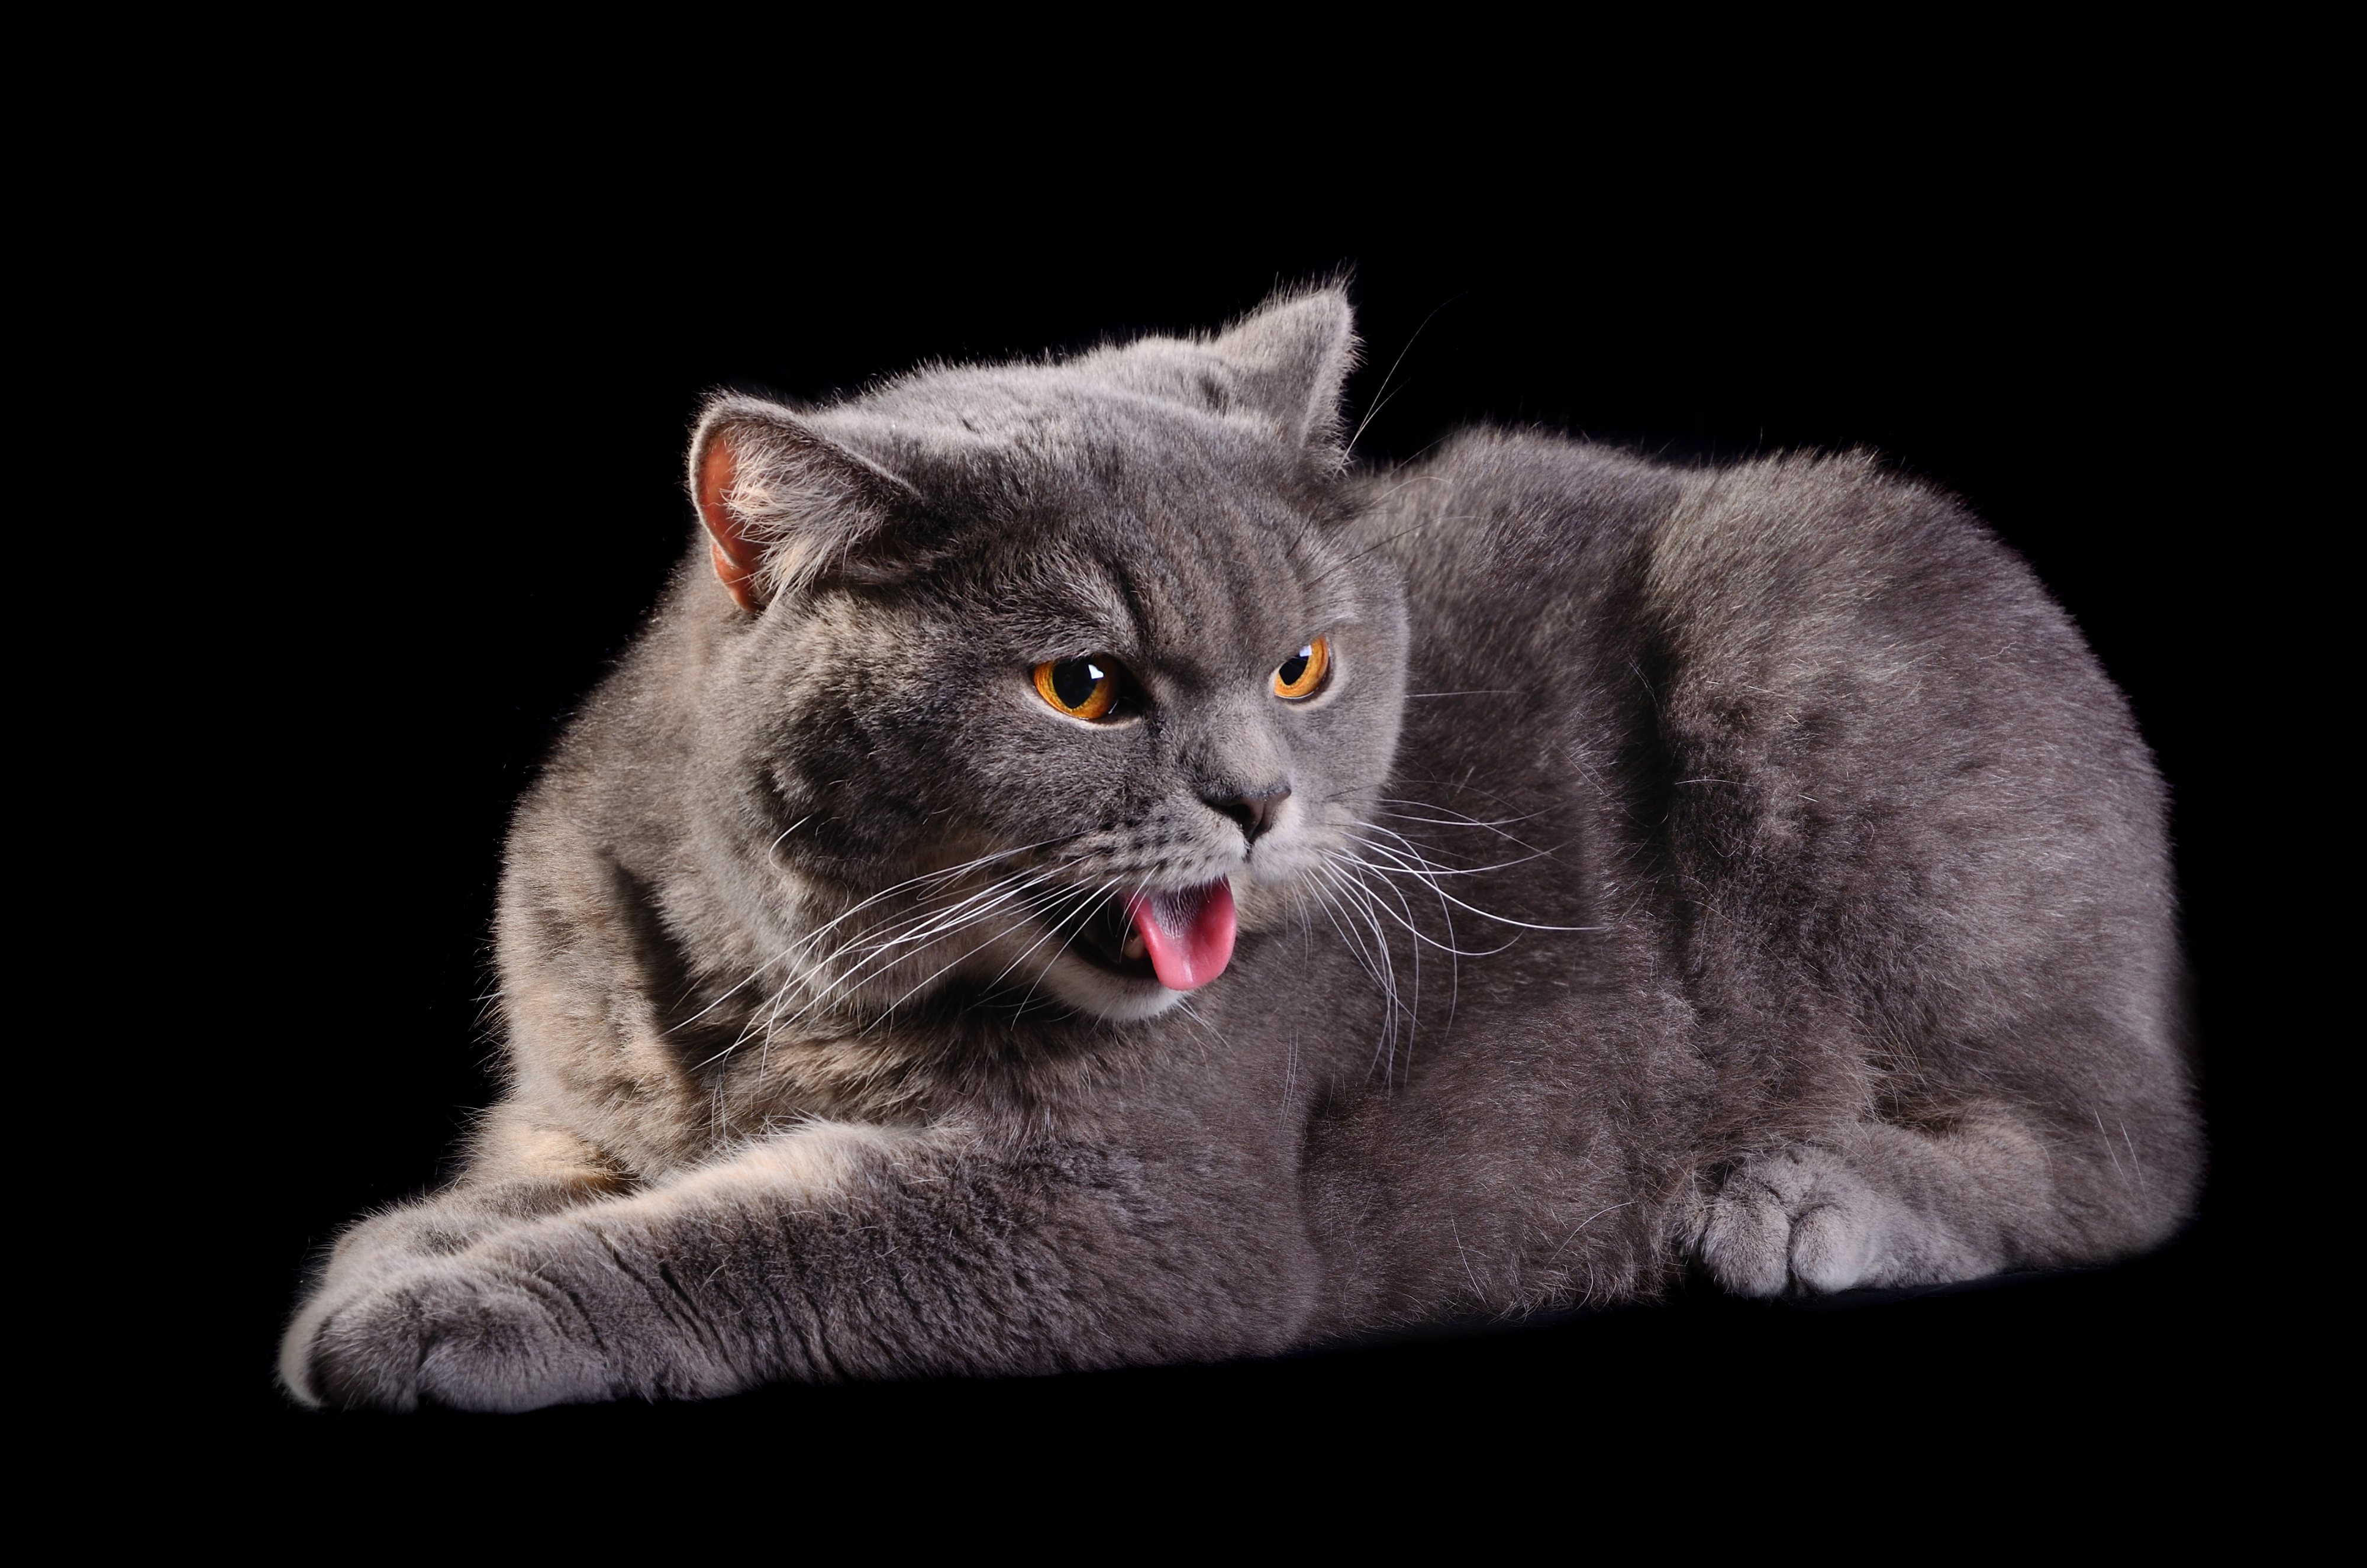 Hay pequeños trucos que pueden evitar el estreñimiento en los gatos